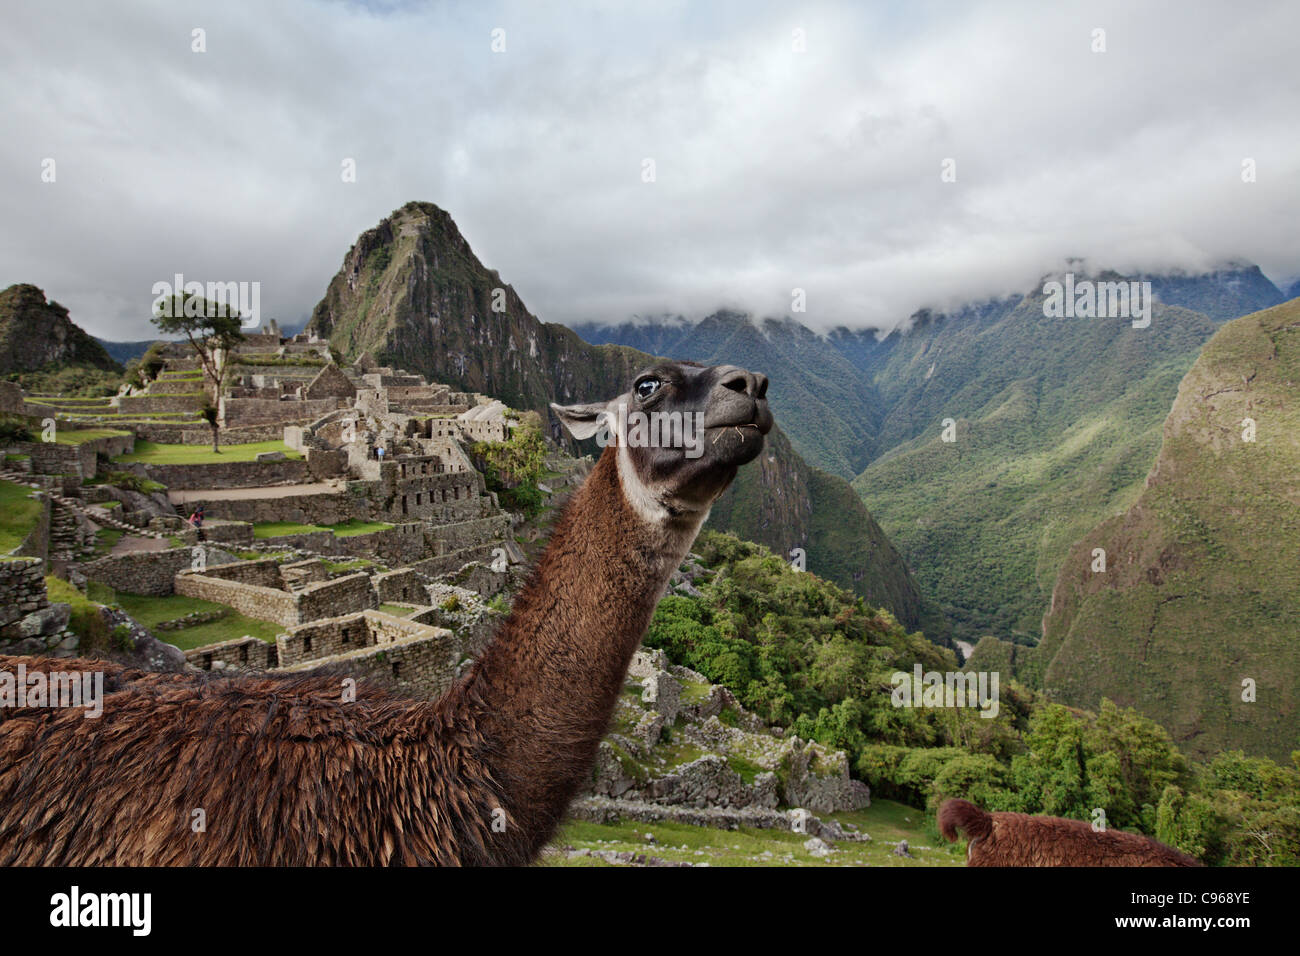 Llama les anciennes ruines Incas de Machu Picchu, site touristique le plus connu dans la région de montagnes des Andes, au Pérou. Banque D'Images